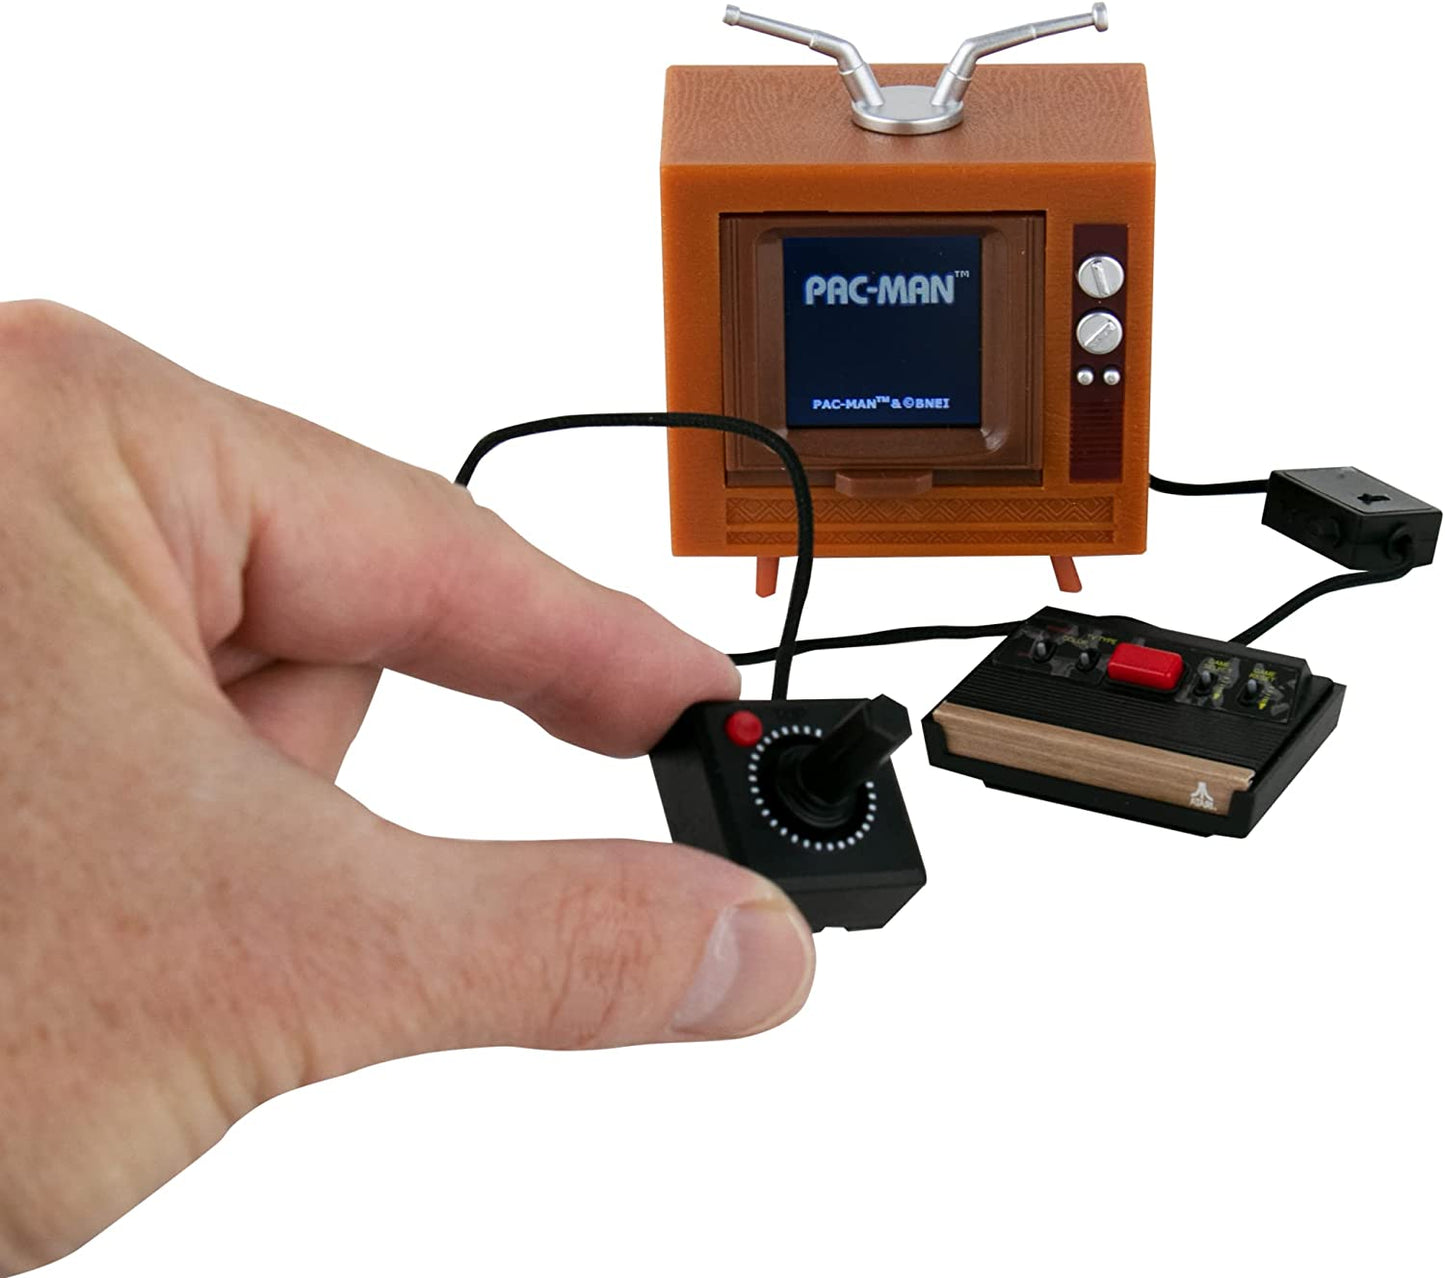 Tiny Arcade Atari 2600